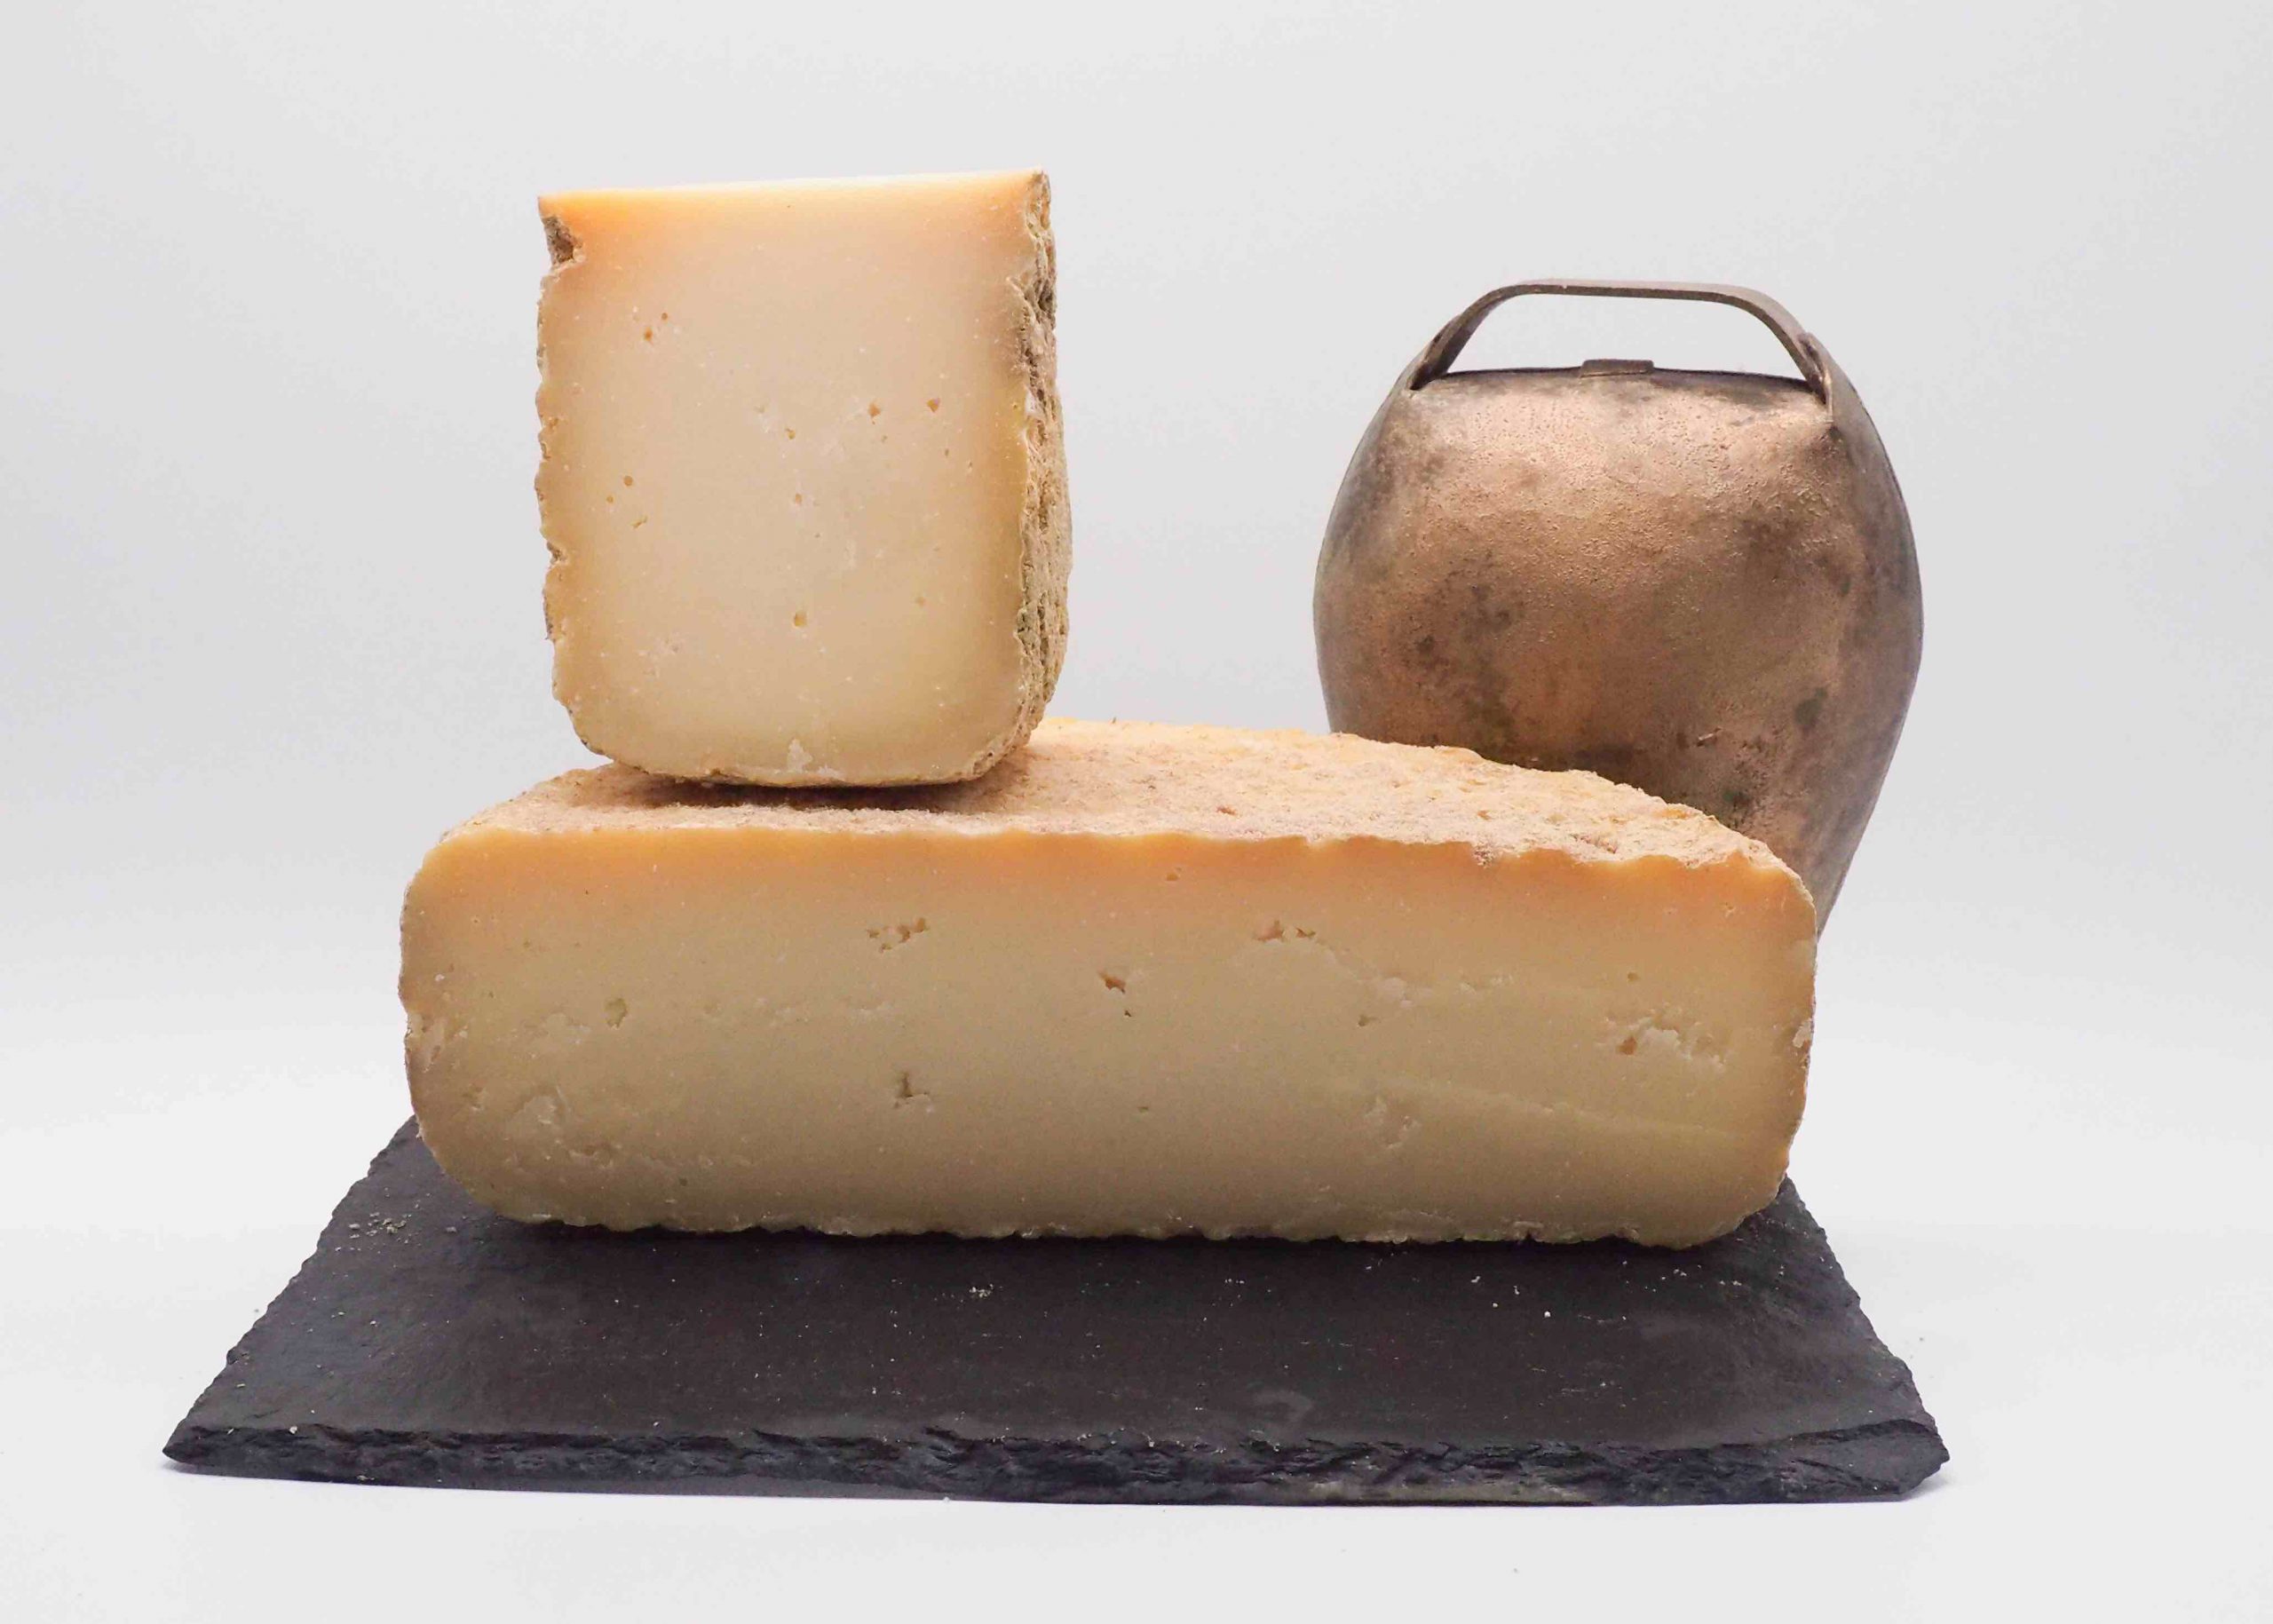 fromage-hercule-dominique-bouchait-155